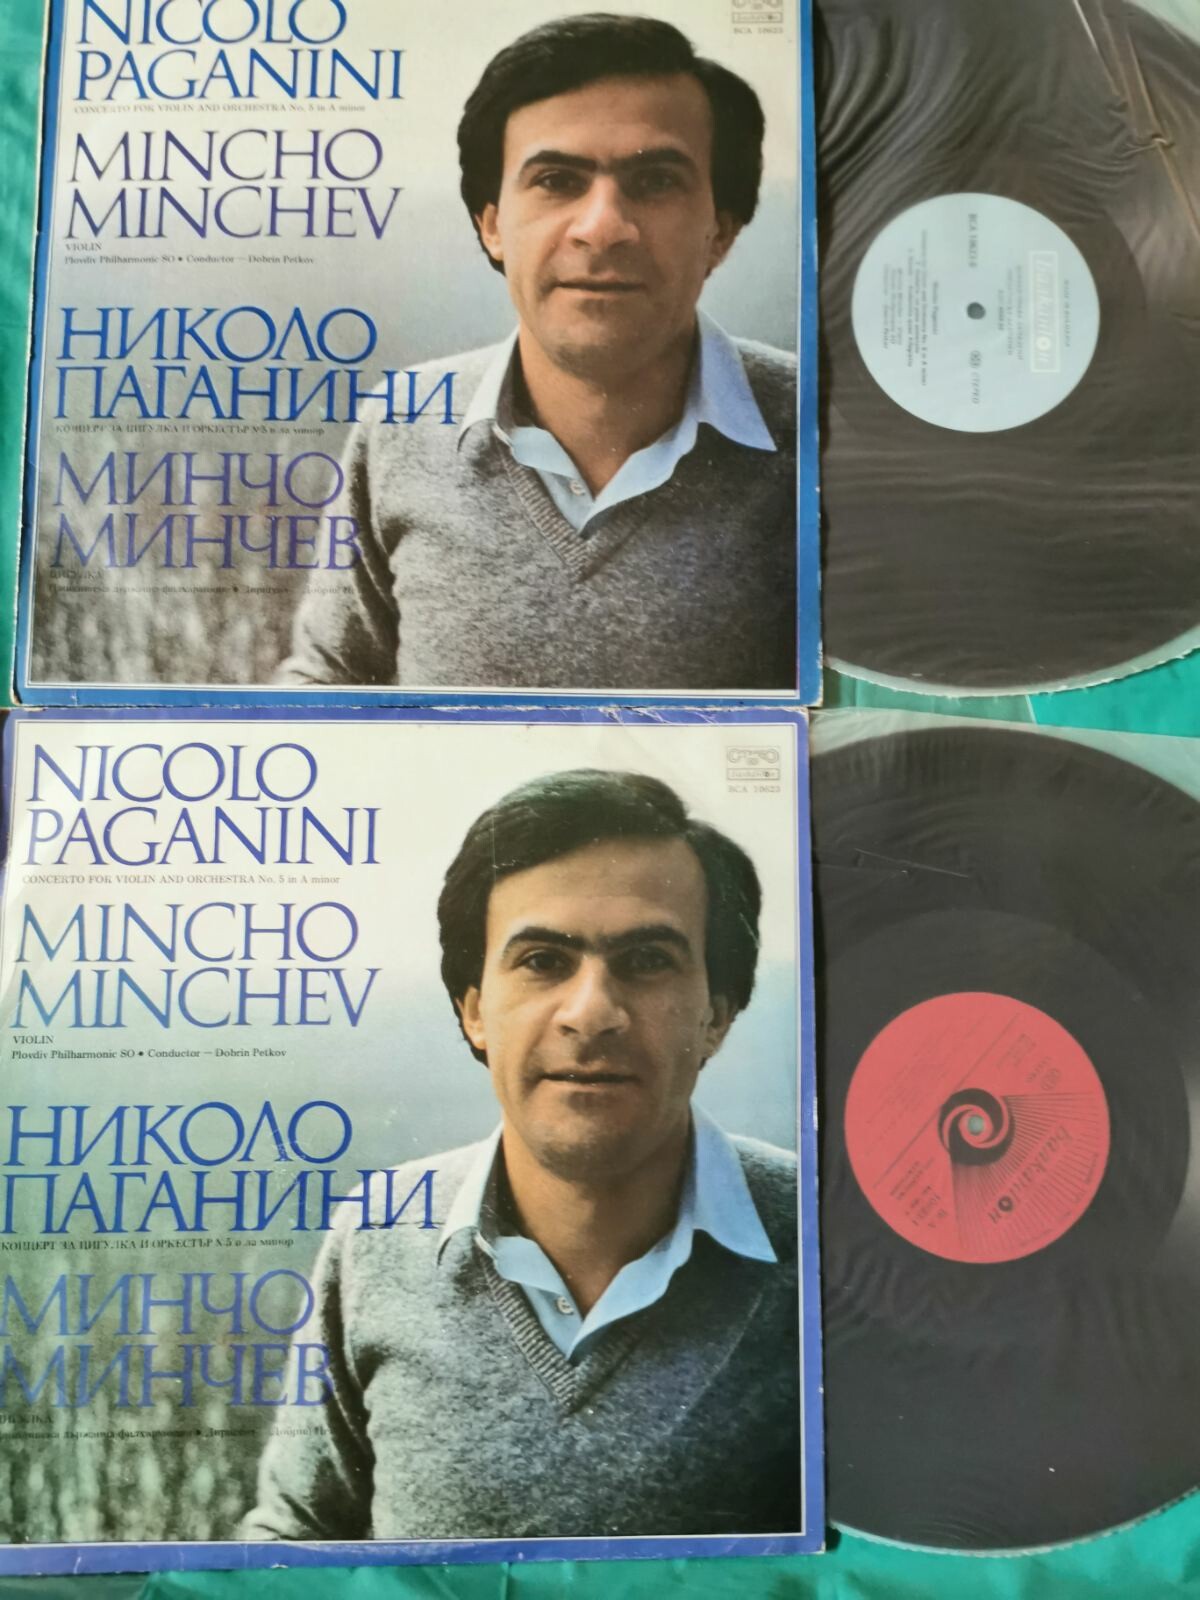 Минчо МИНЧЕВ - цигулка